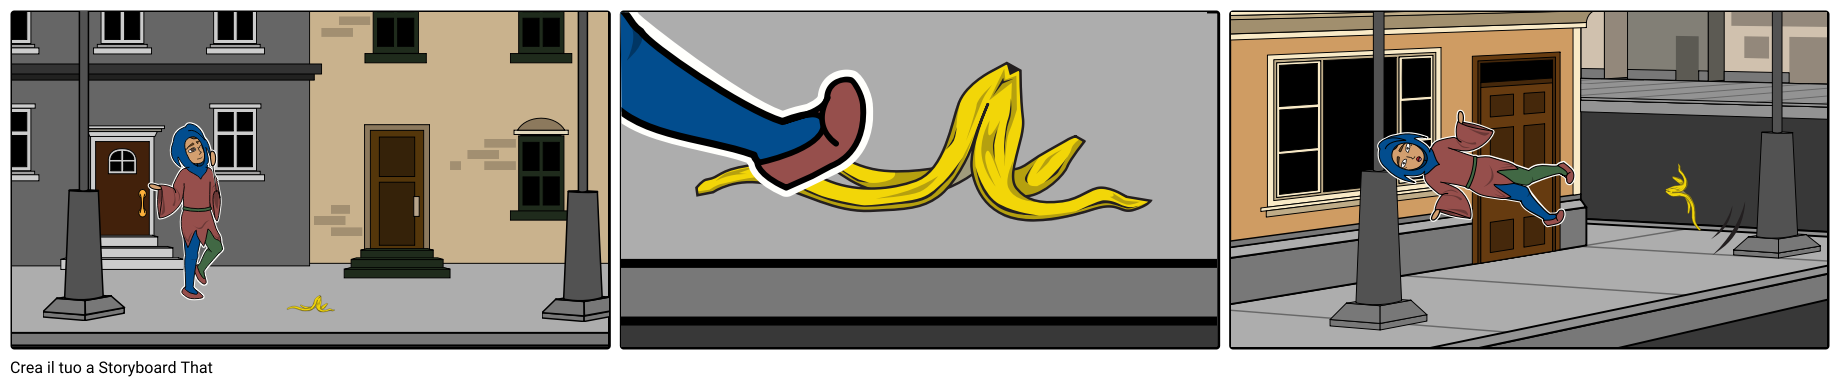 Jester scivola sulla buccia di banana